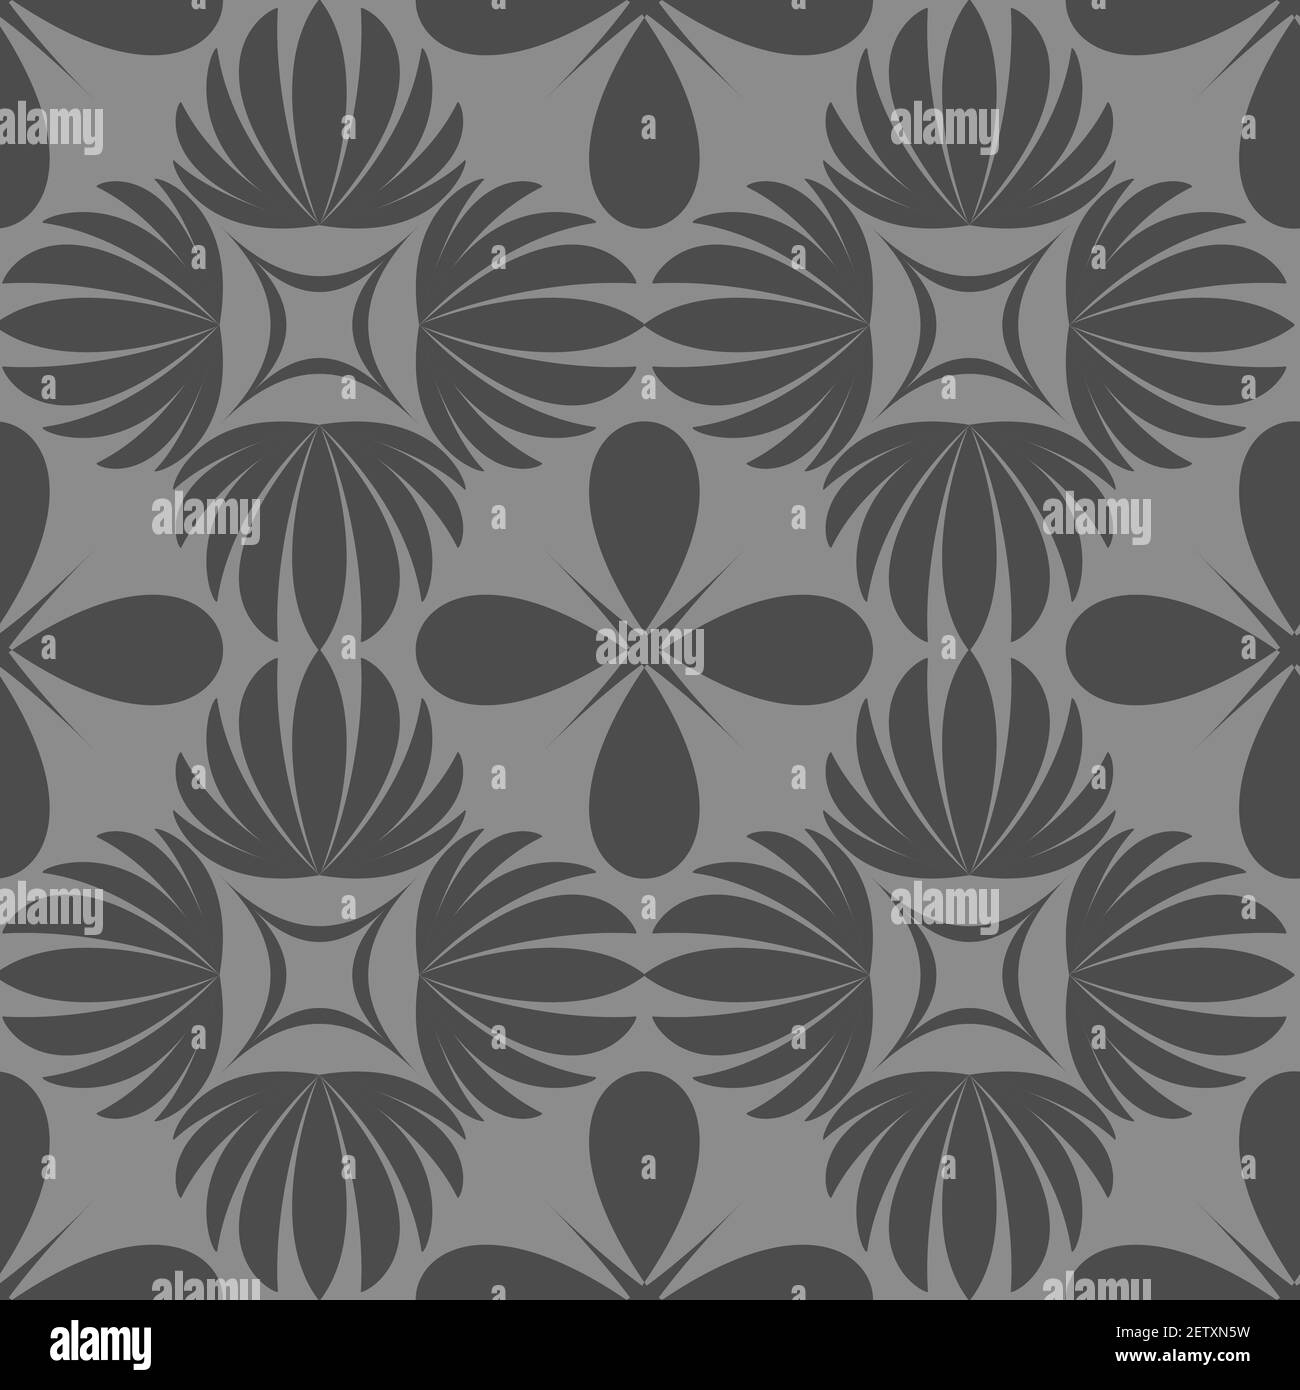 Floral Vektor Nahtloses Muster-Design für Tapeten, Textil, Oberfläche, Mode, Hintergrund, Fliesen, stationär, Wohnkultur, Einrichtung etc. Stock Vektor